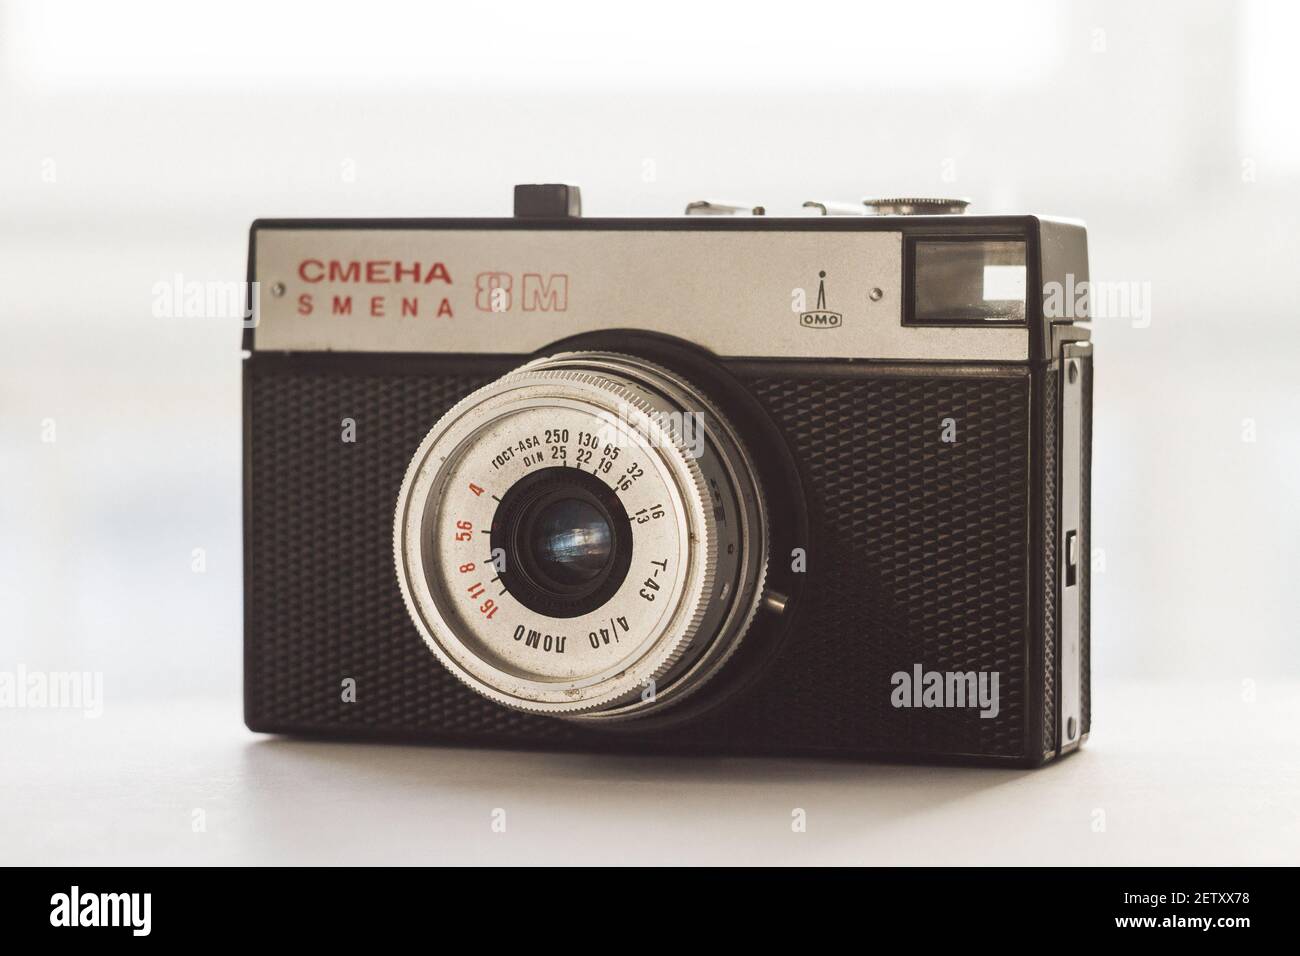 Appareil photo rétro Smena 8M fabriqué en URSS. Ancienne caméra film 35 mm fabriquée en Union soviétique. Éditorial : UFA, Russie - 31 janvier 2014 Banque D'Images